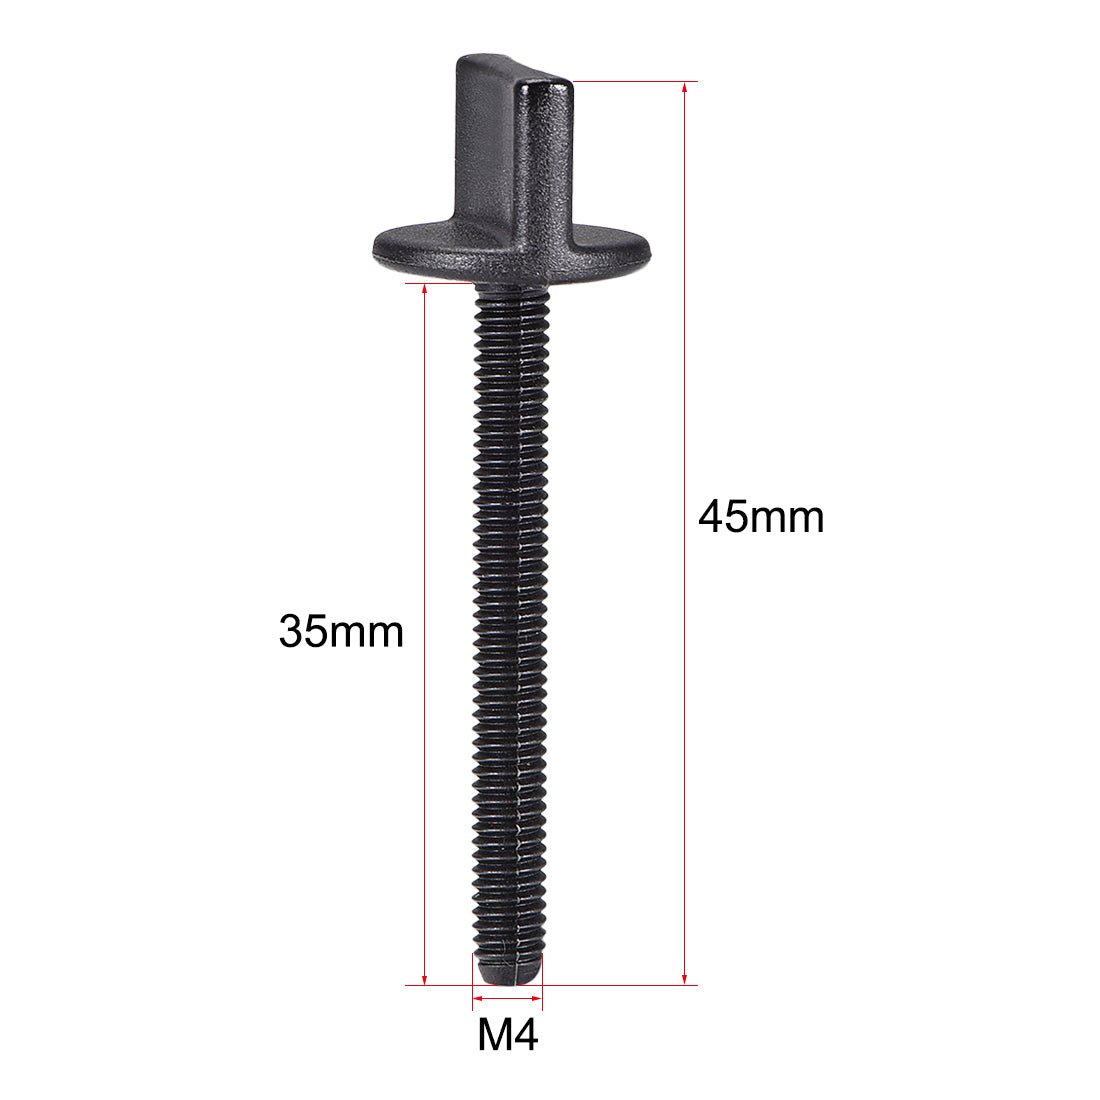 uxcell Uxcell M4 x 35mm Thumb Screw Bolt Nylon Plastic Screws Metric Thread 5 Pcs